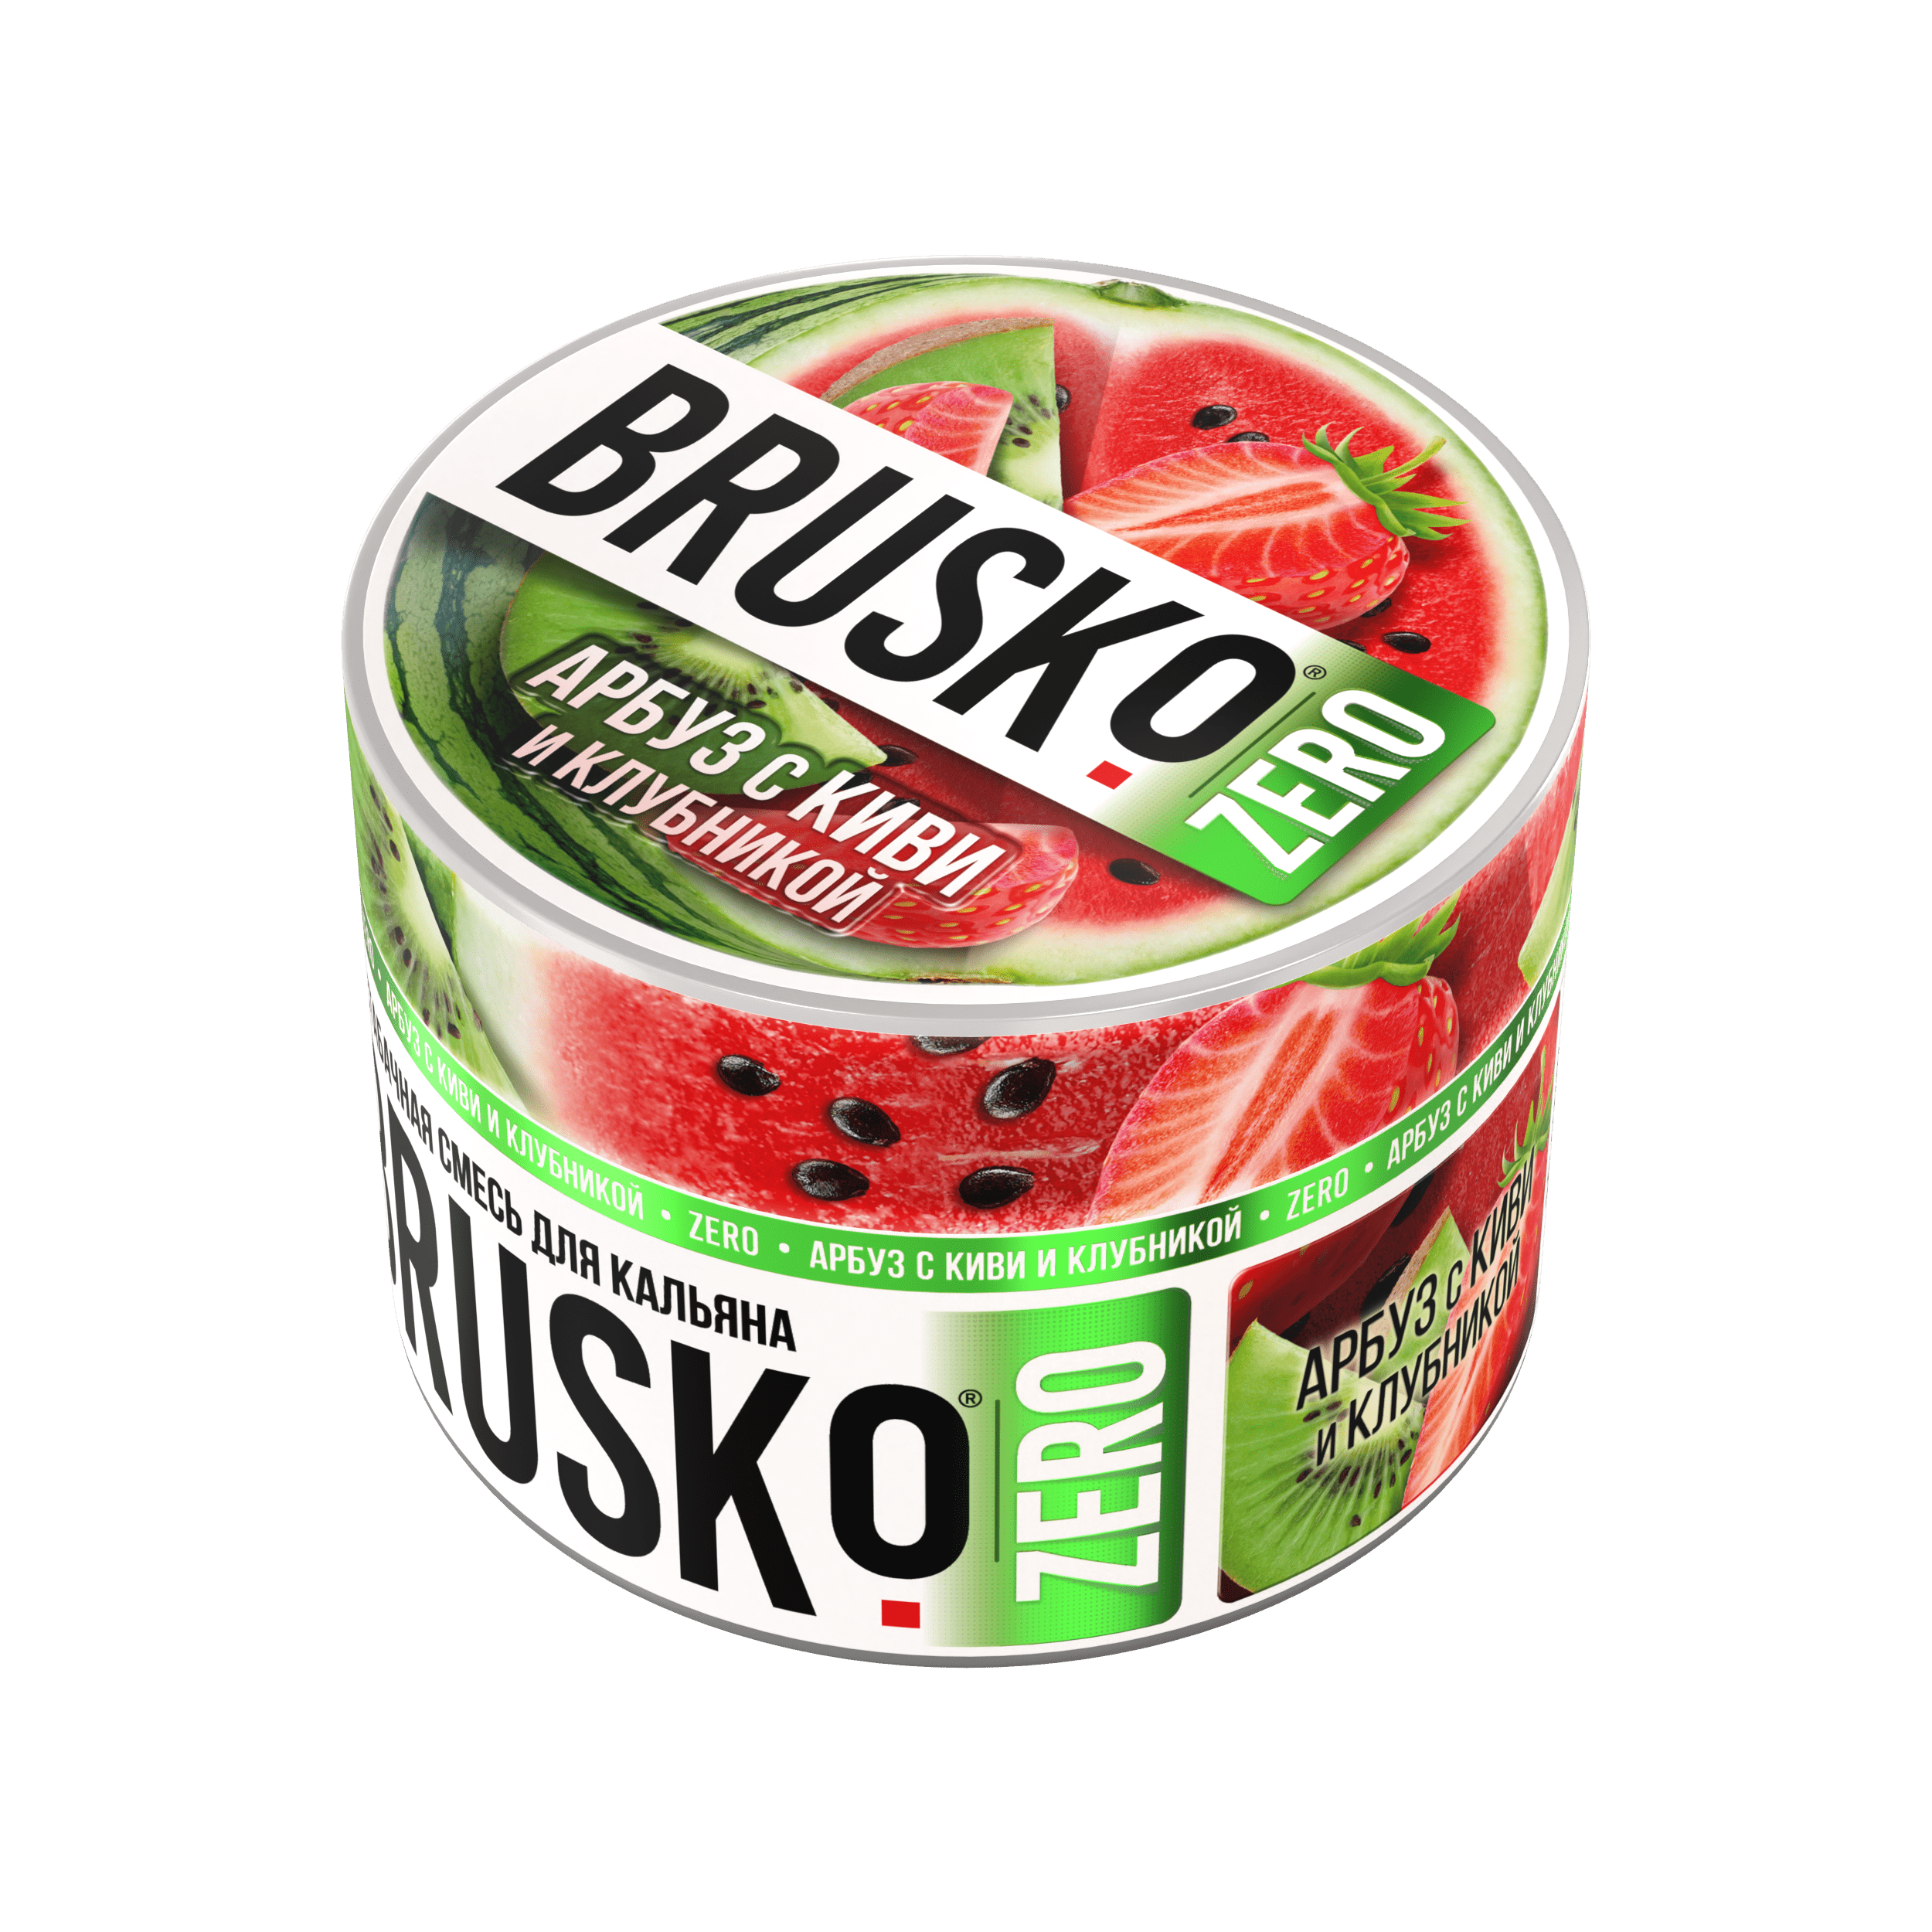 Бестабачная смесь для кальяна BRUSKO, 50 г, Арбуз с киви и клубникой, Zero (М)